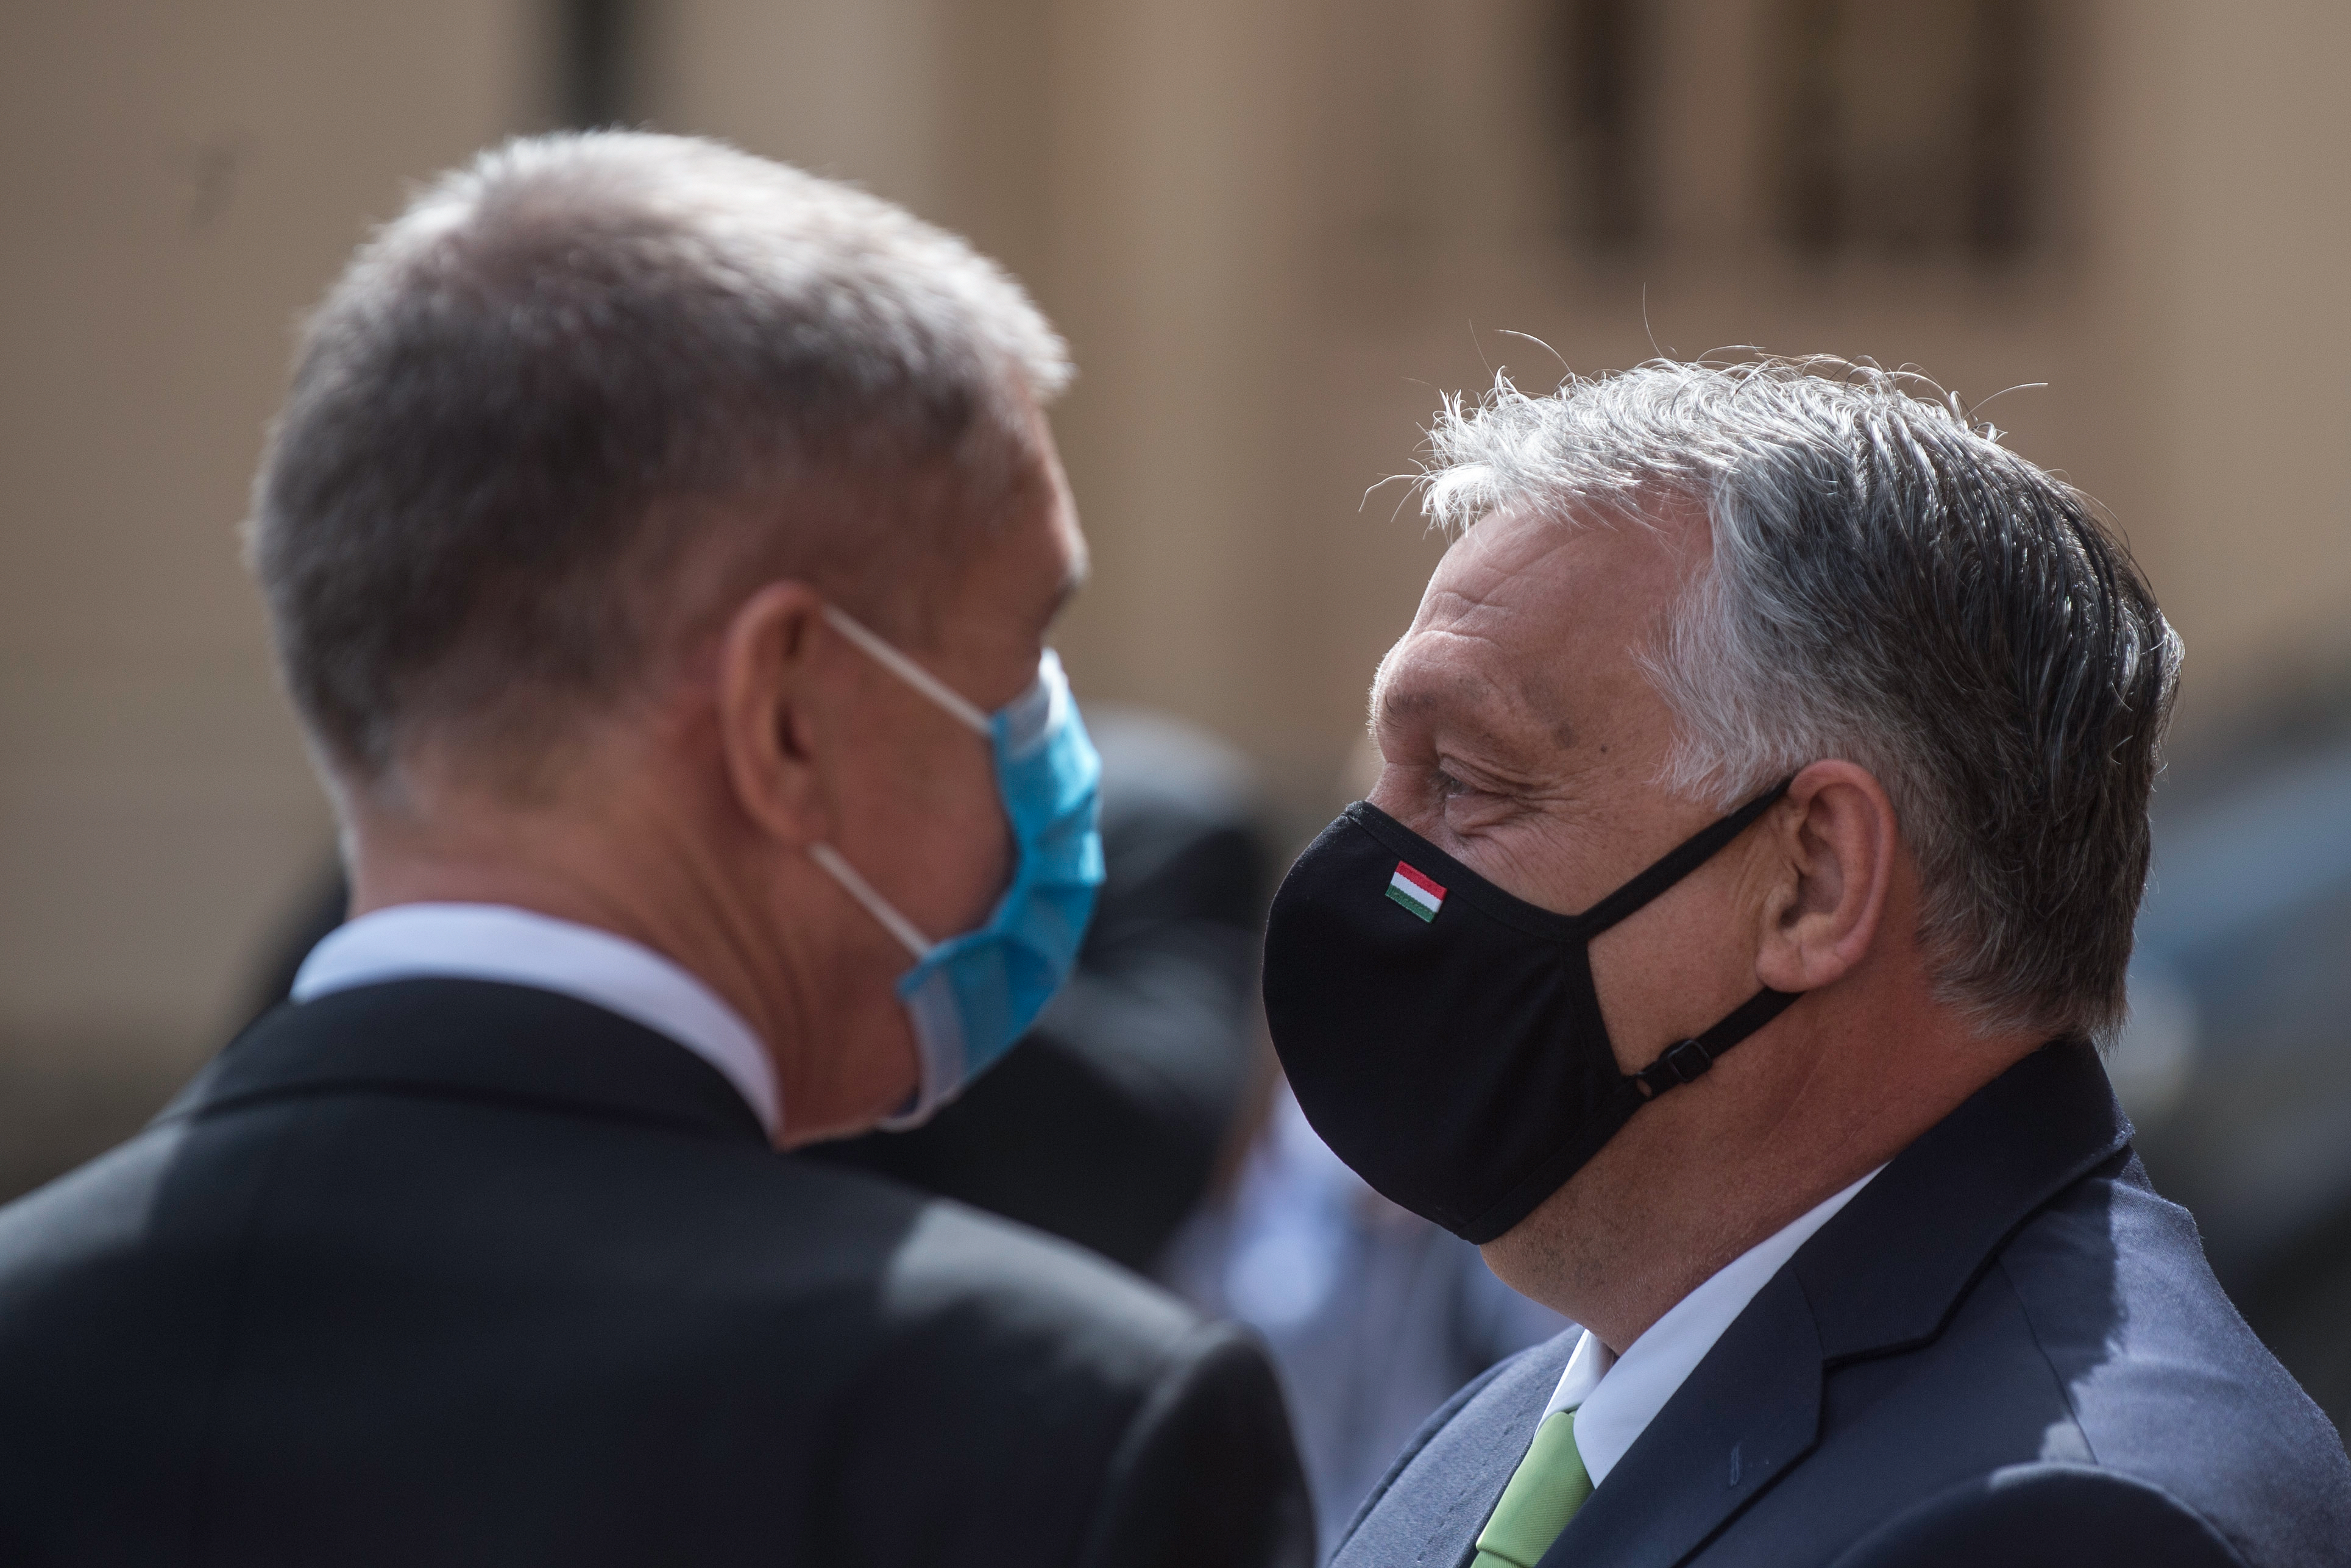 Magyarország 150 lélegeztetőgépet küld Csehországnak